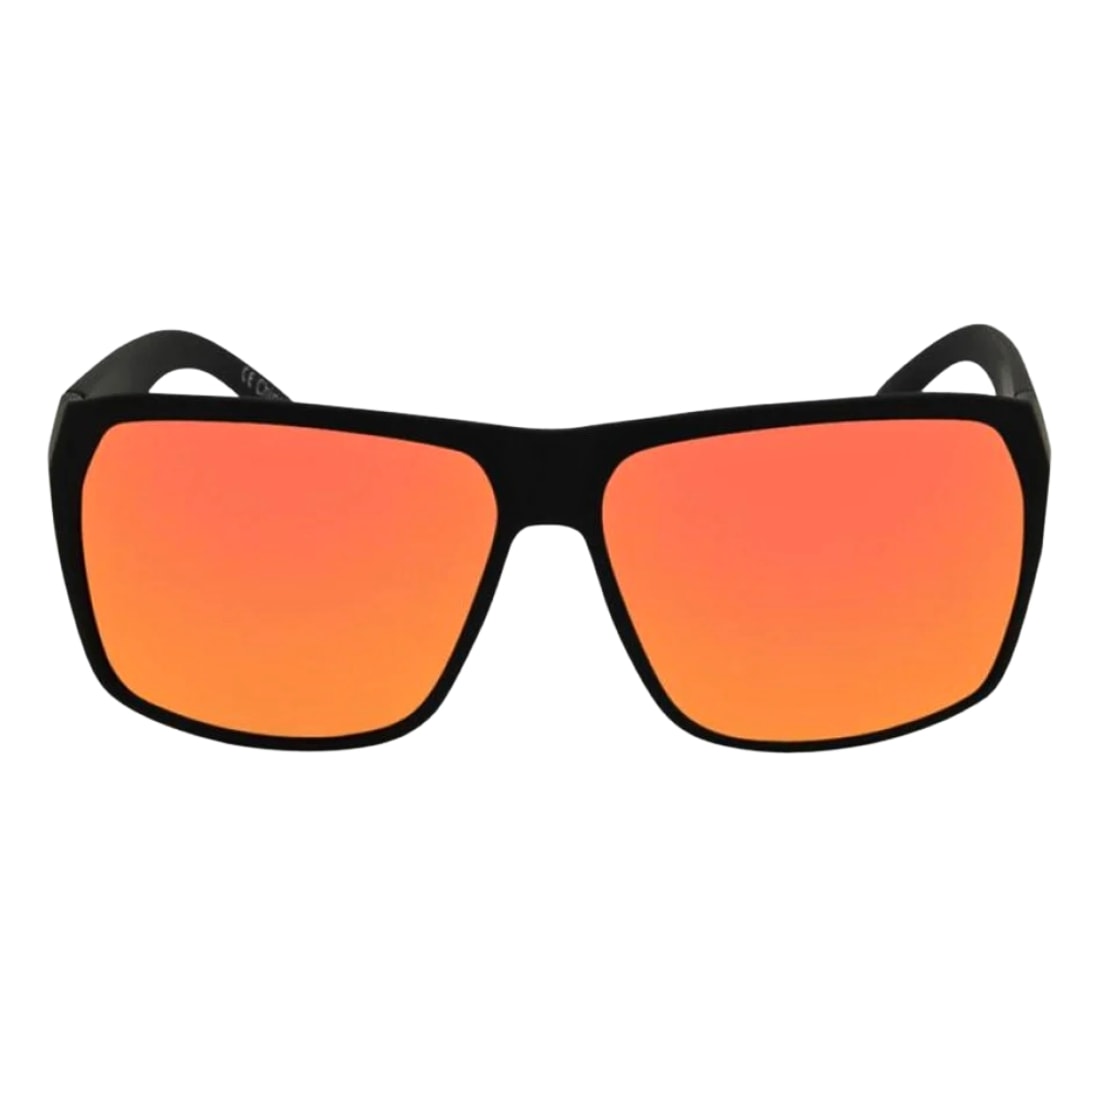 I-Sea Nick I Sunglasses - Black/Red Polarised